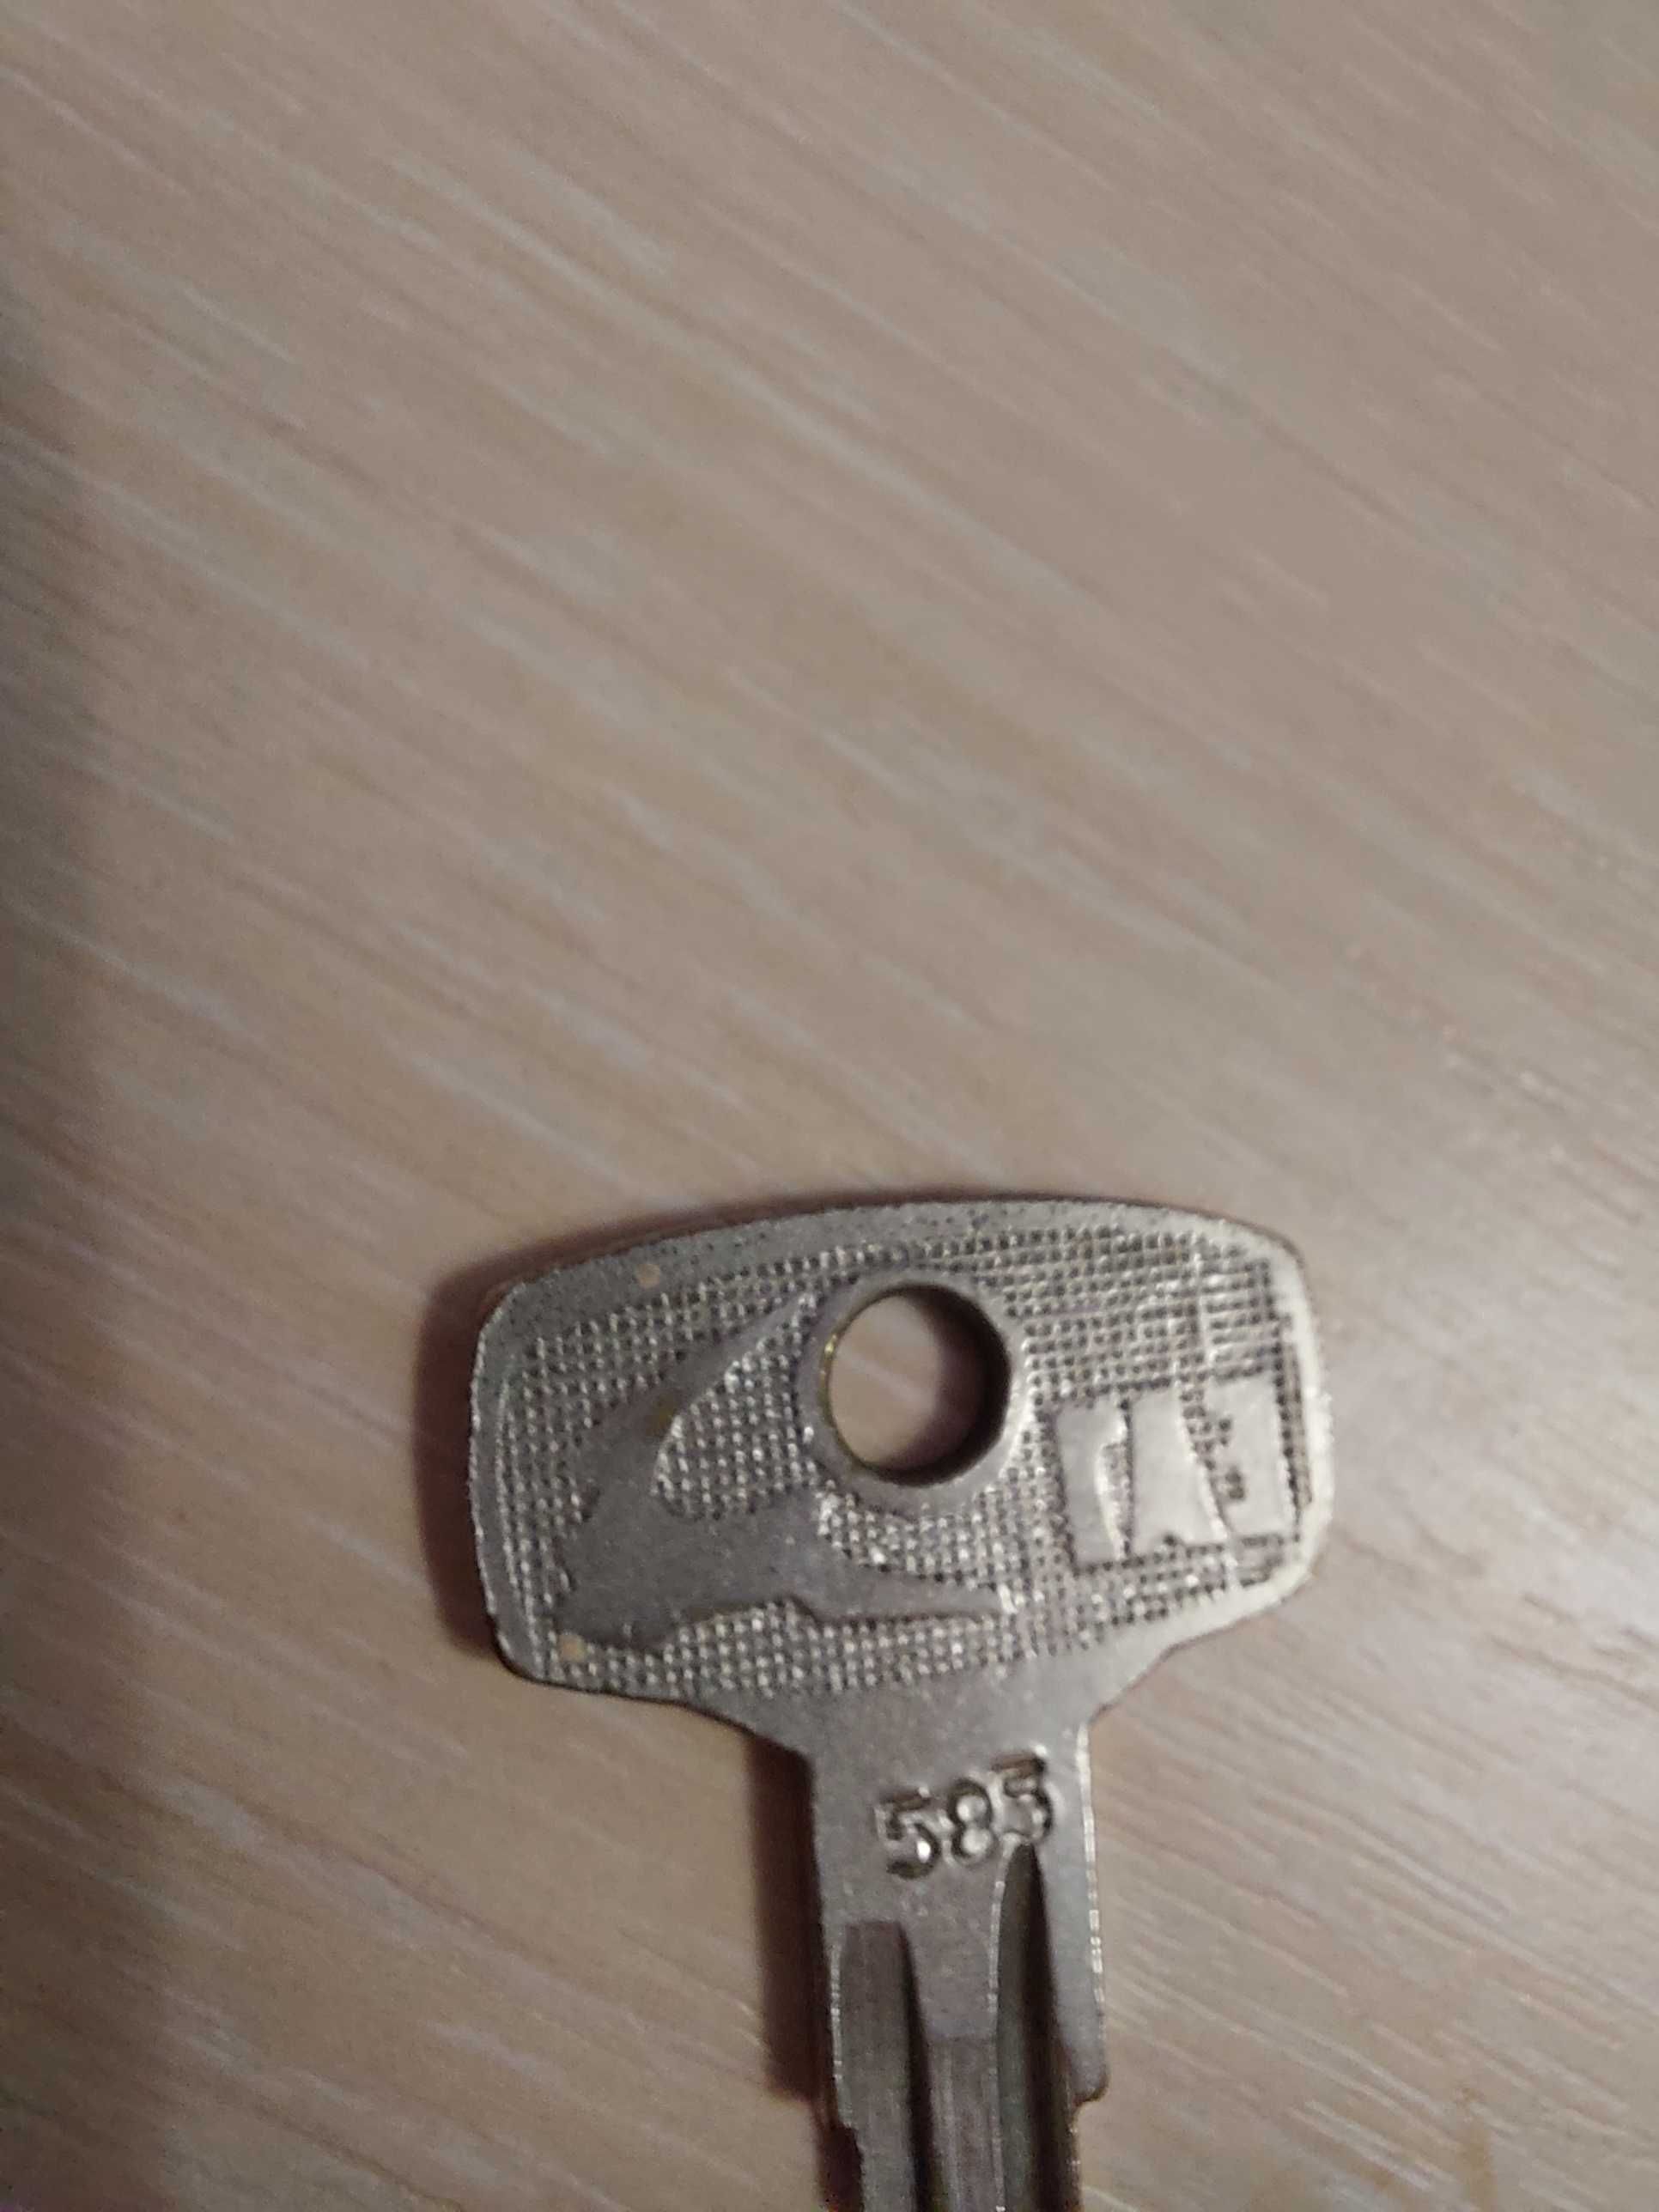 Ключ от замка ГАЗ # 585